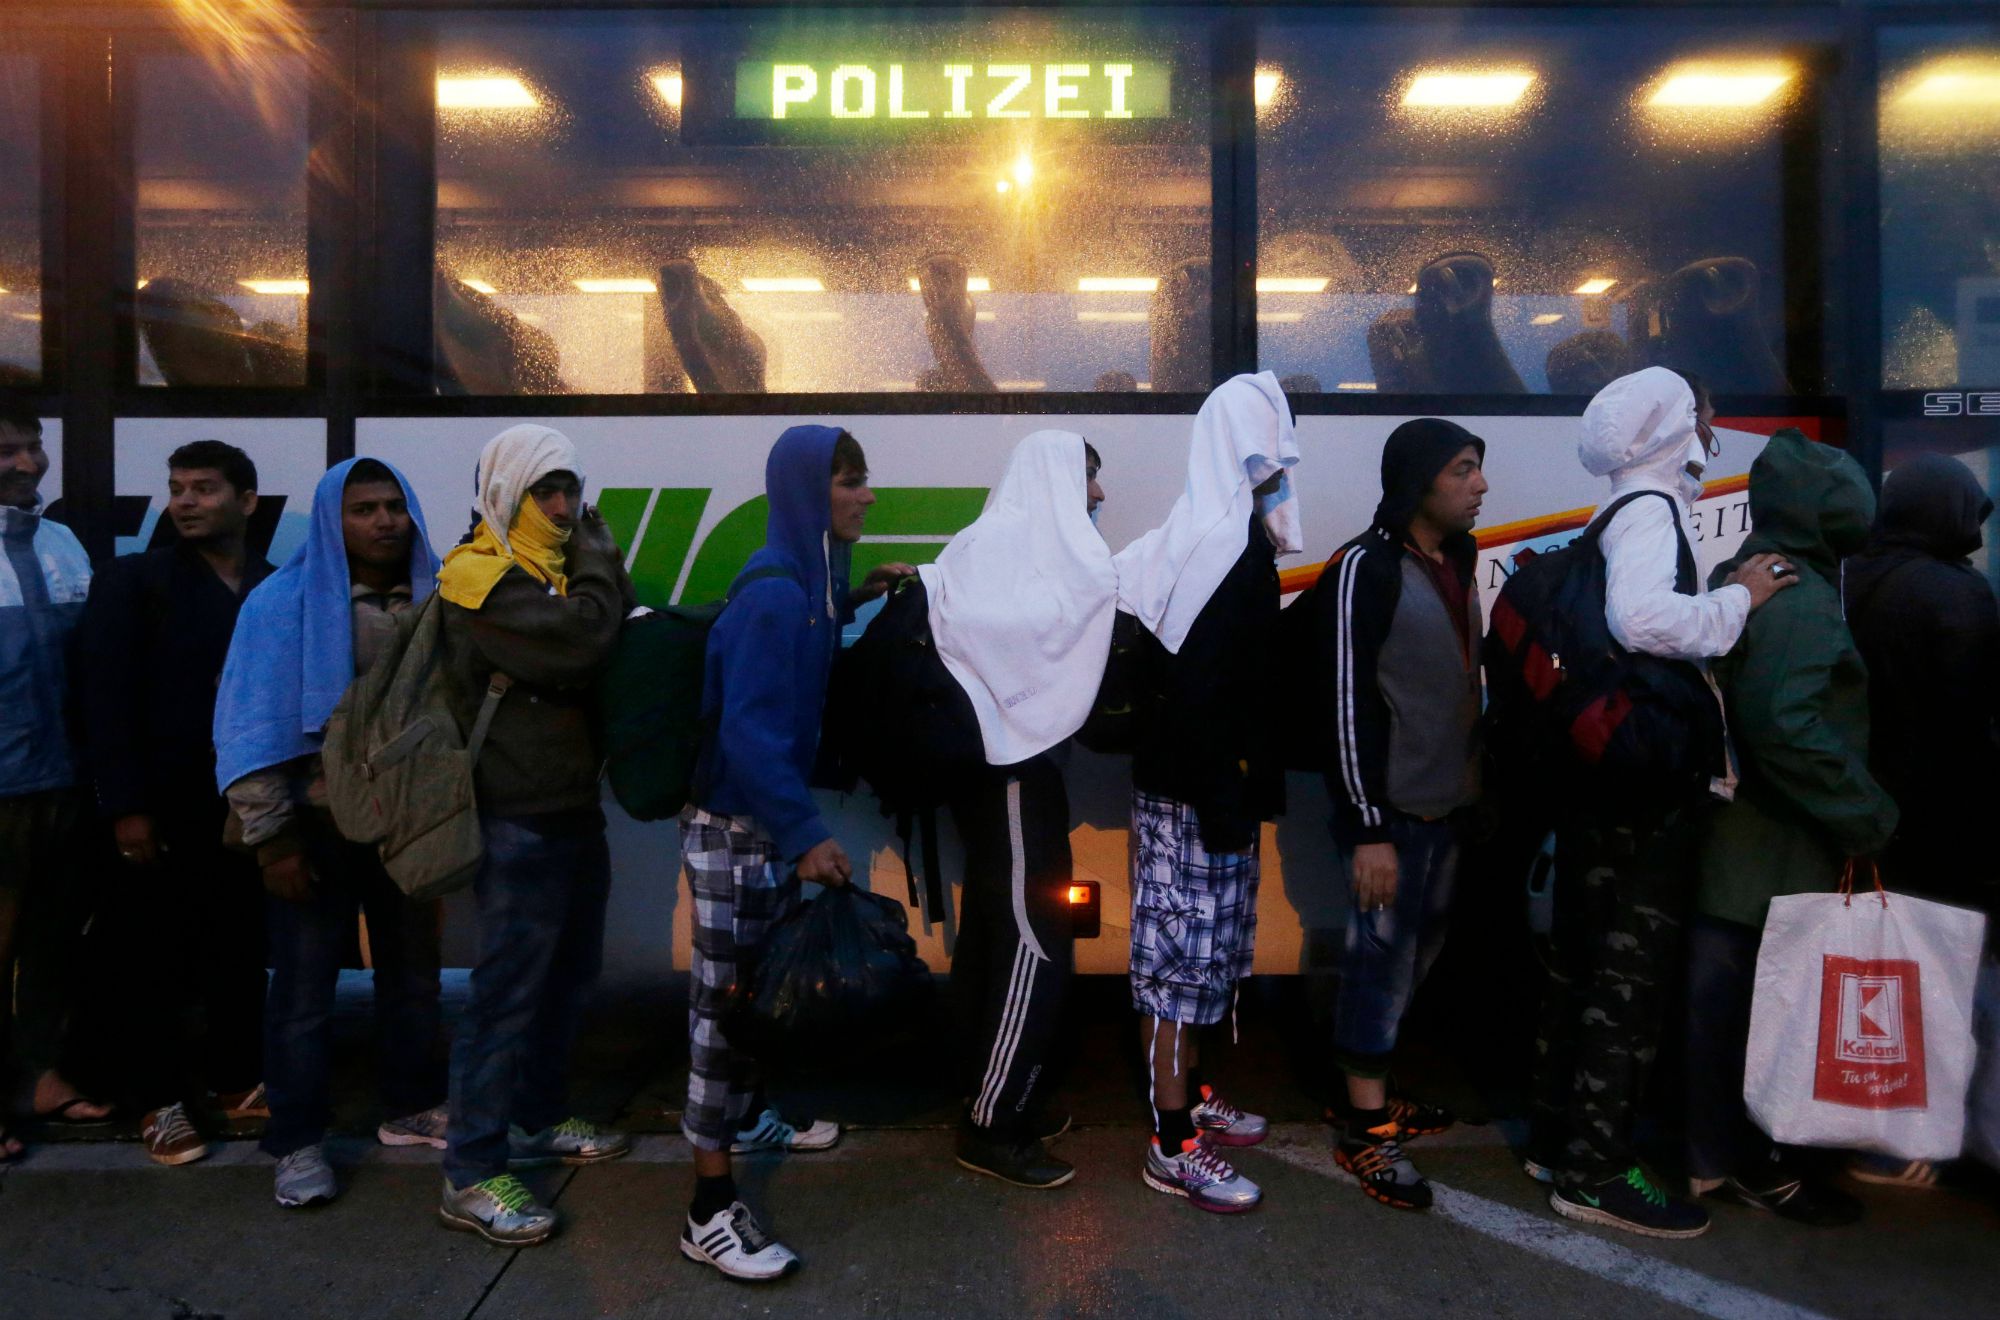 Σκληρότερες προϋποθέσεις για τη χορήγηση ασύλου ενέκρινε η γερμανική βουλή